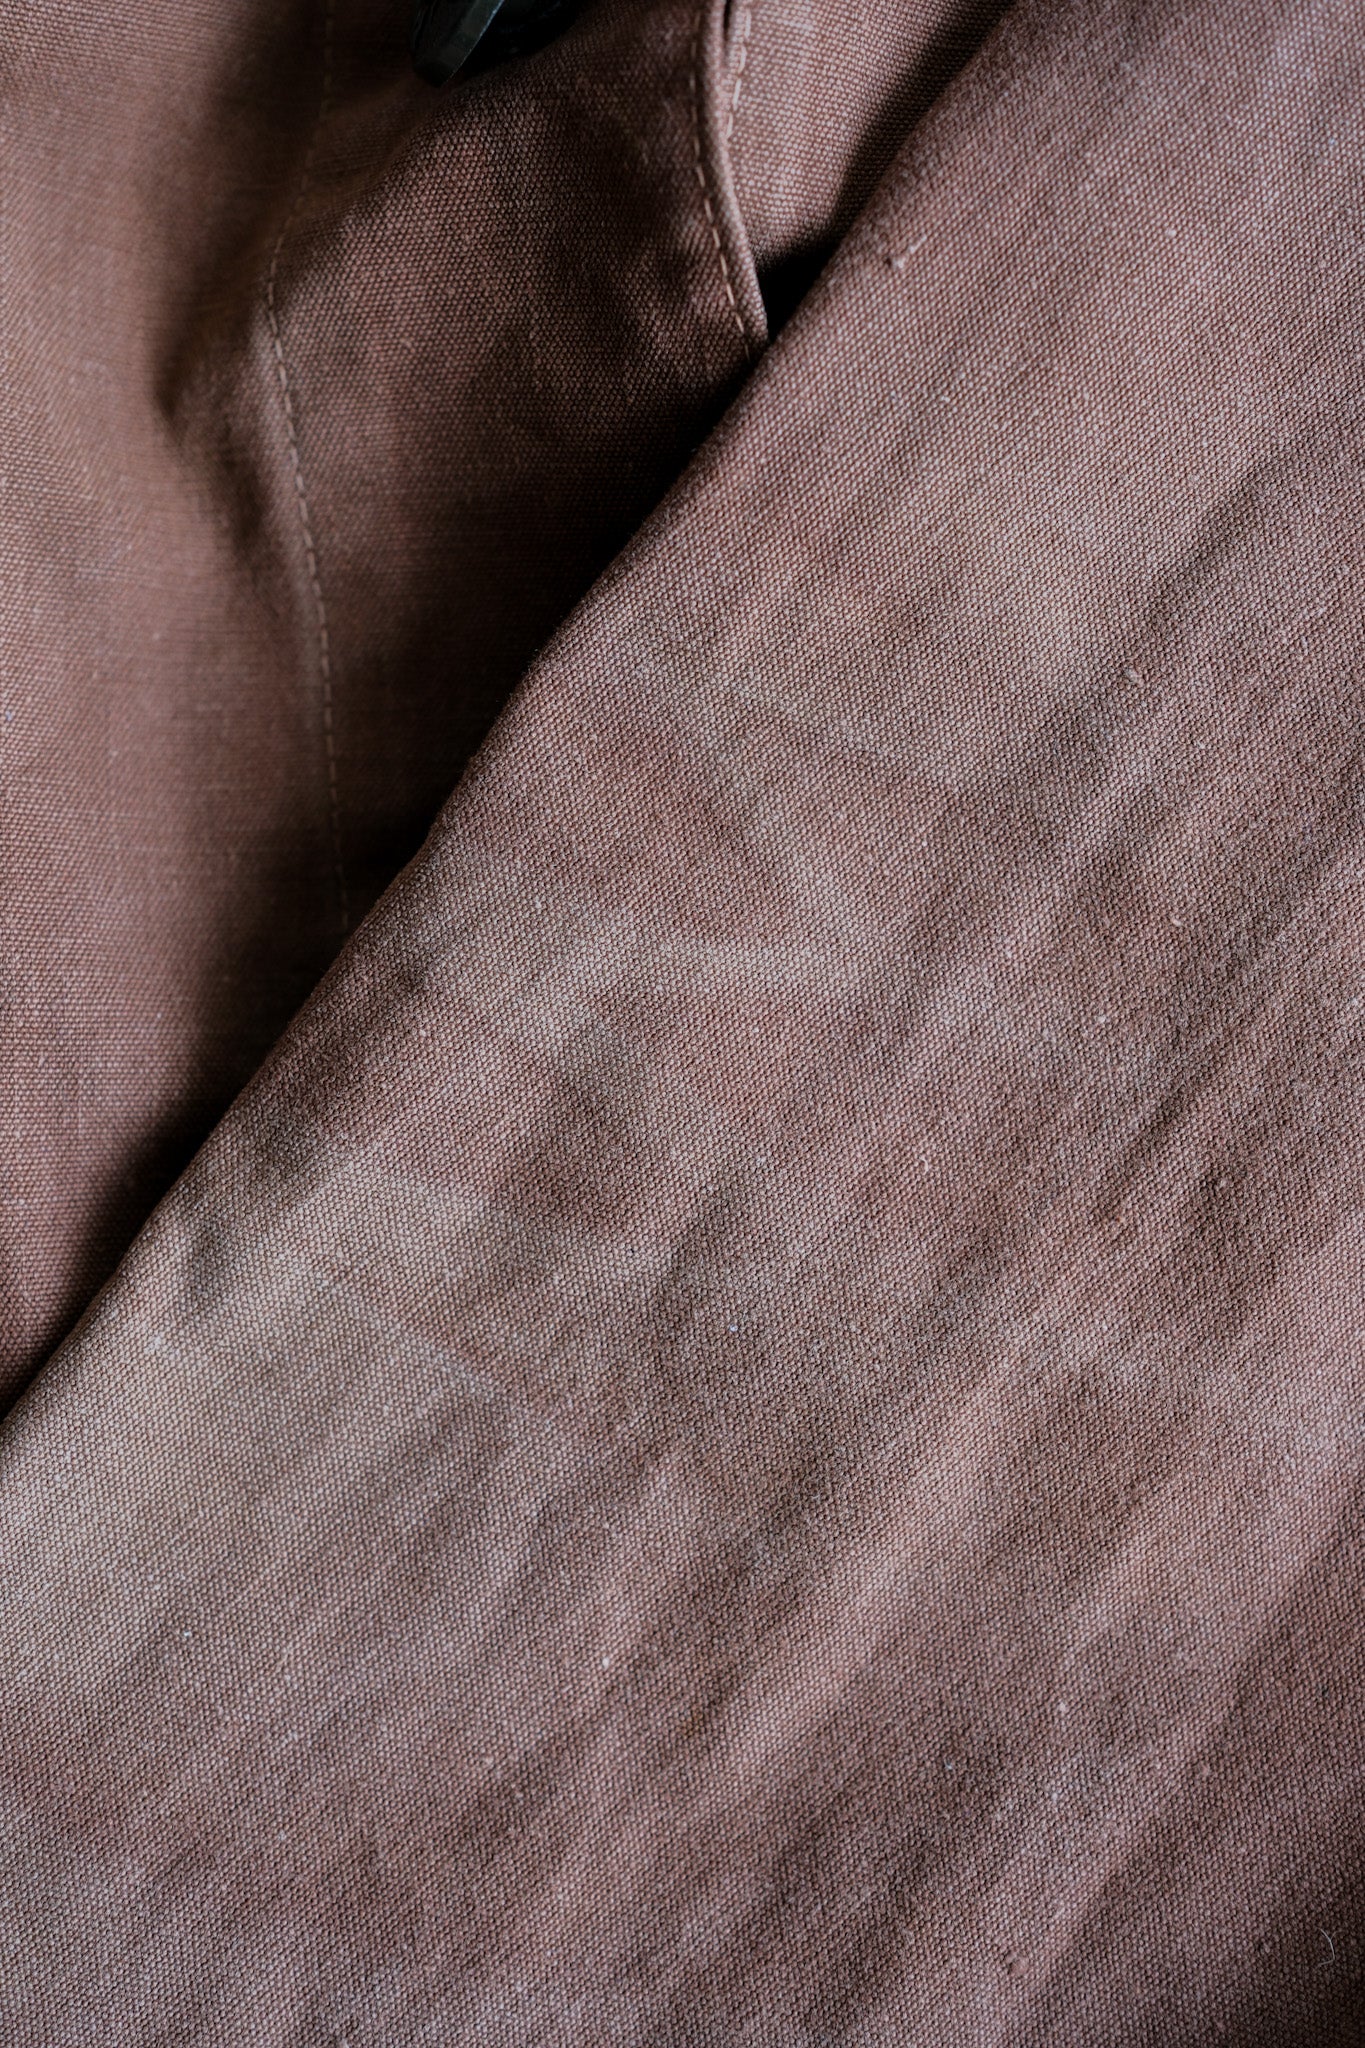 [~ 40's] Veste de chasse en toile de coton brun rougeâtre vintage français